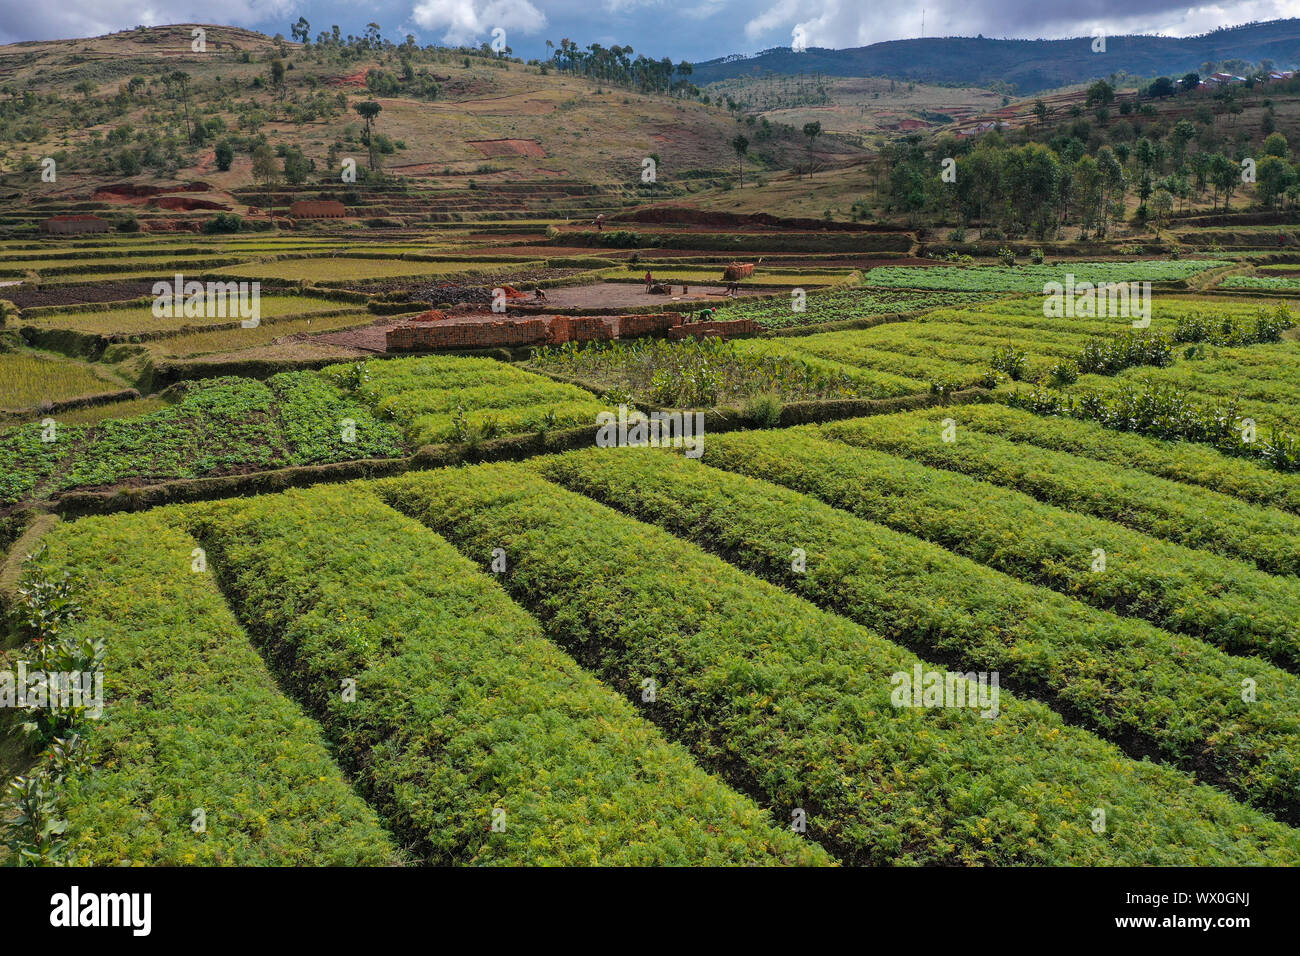 La culture de légumes et la fabrication de briques sur les champs de riz, la route nationale RN7 entre Antsirabe et Antananarivo, Madagascar, Afrique Banque D'Images